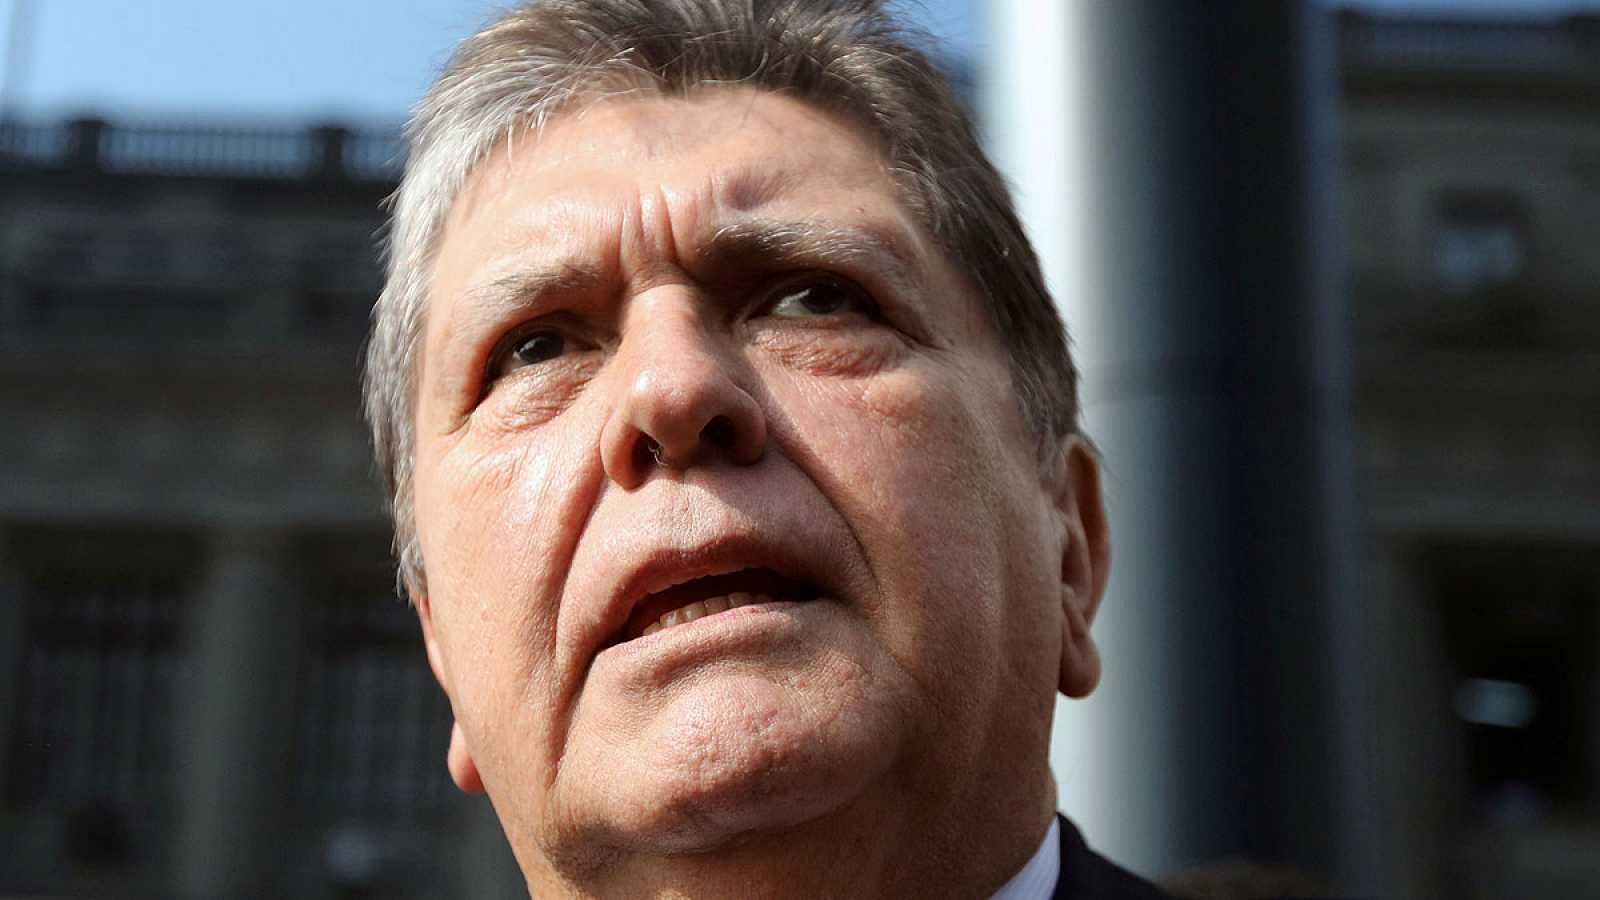 Muere el expresidente peruano Alan García después de dispararse en la cabeza cuando iba a ser detenido